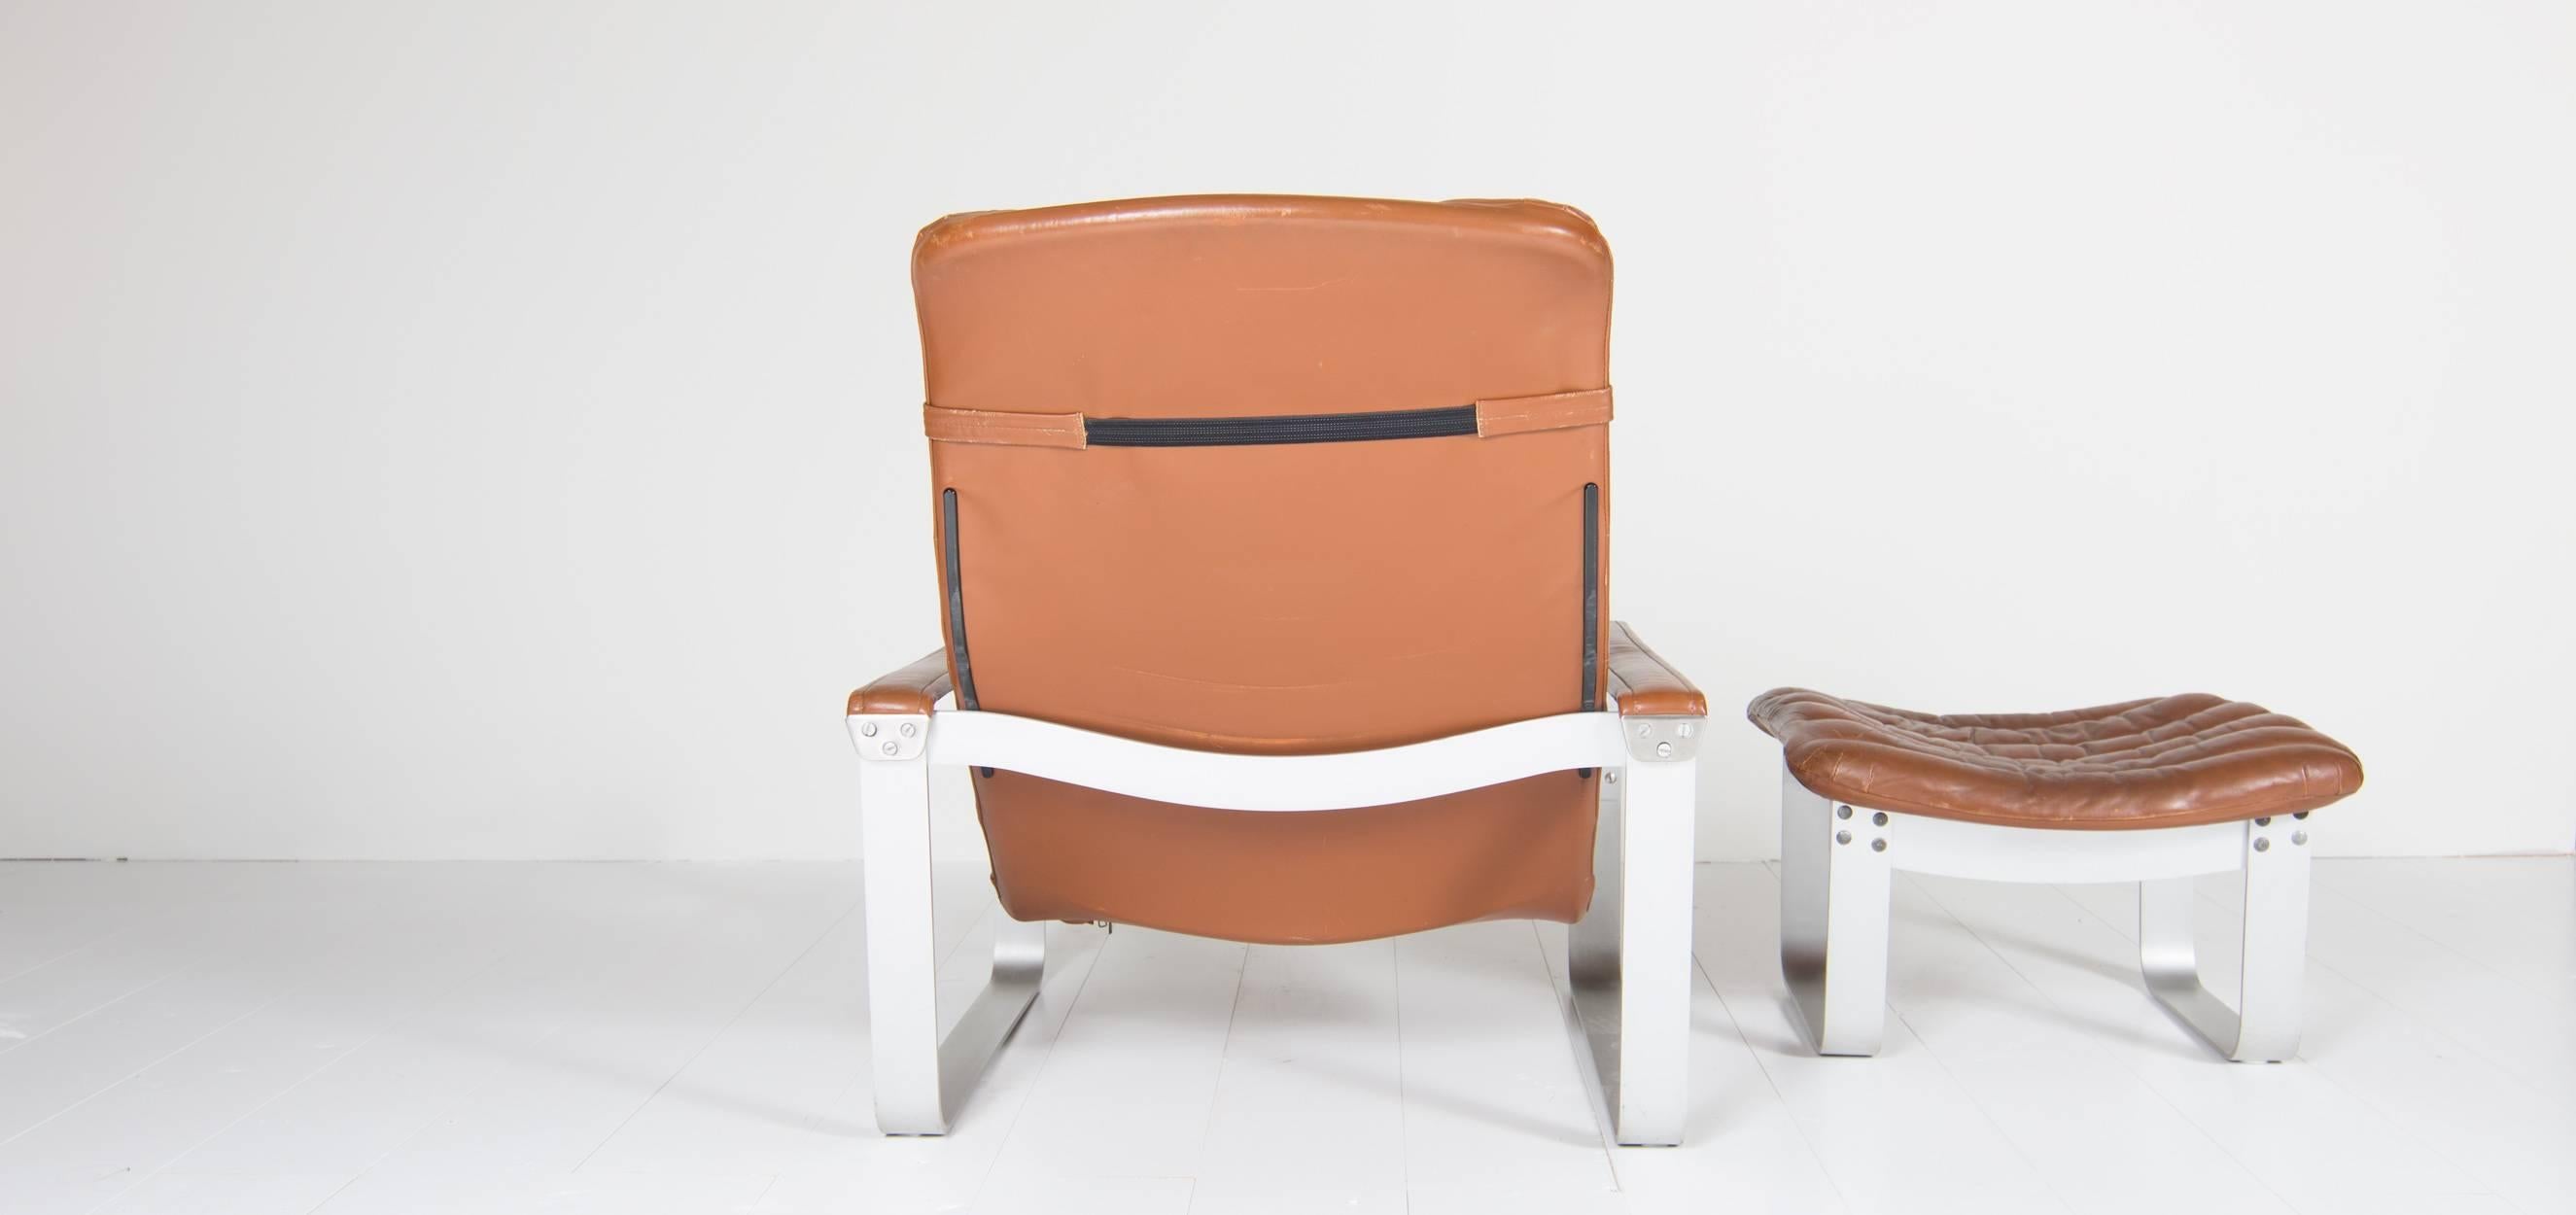 Mid-20th Century Asko Chair Model Pulkka Designed by Ilmari Lappalainen, 1968